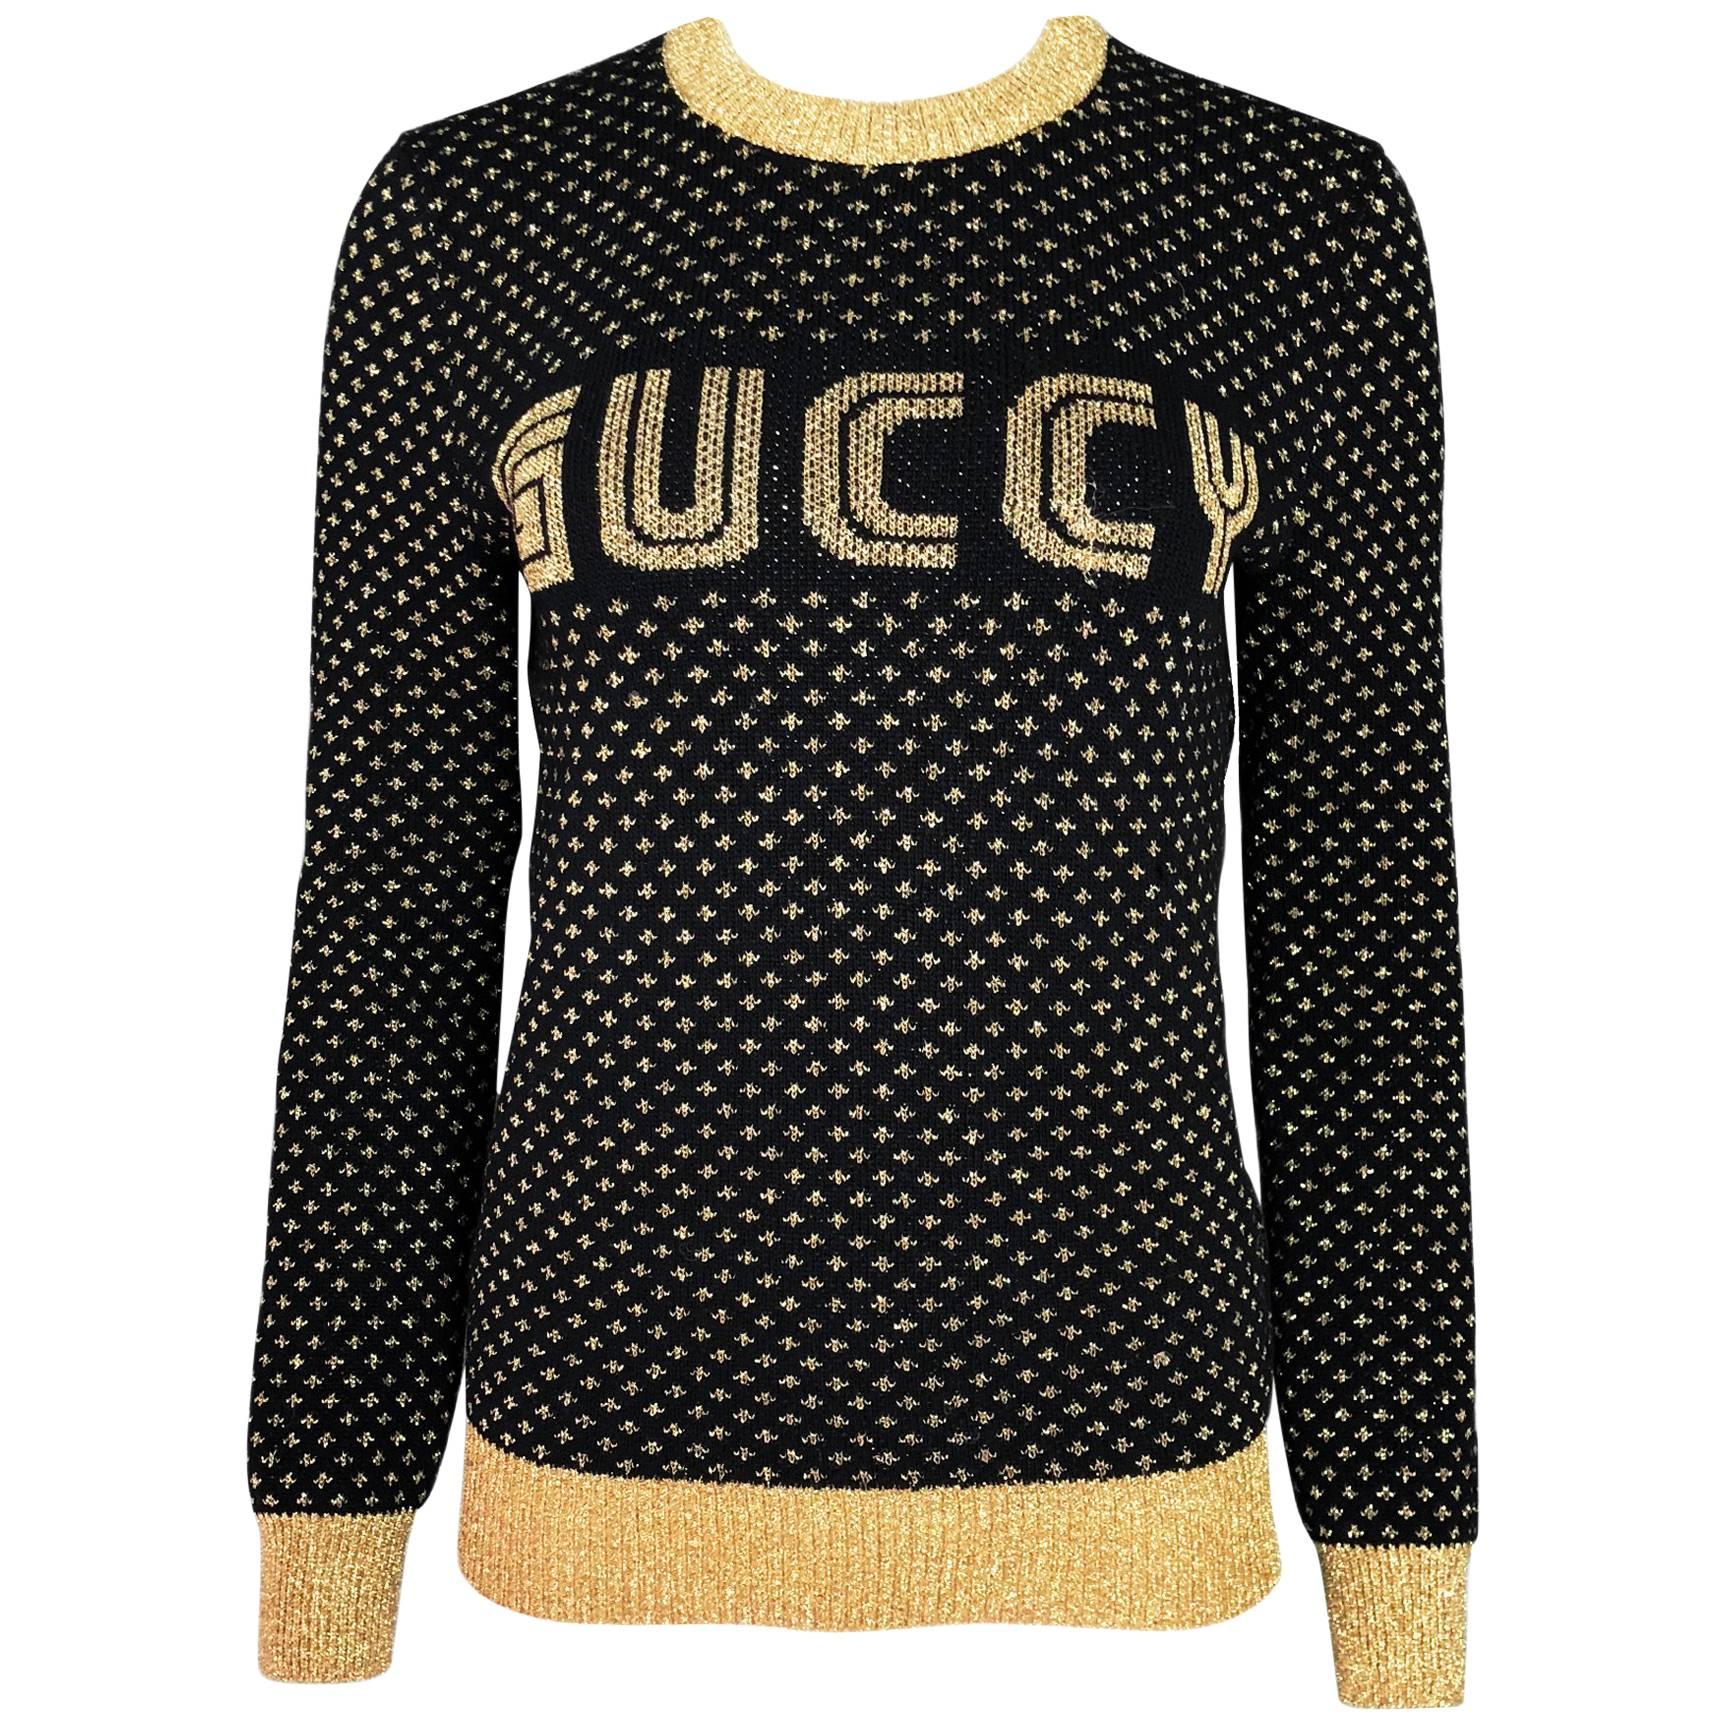 Gucci 2018 Black & Gold Guccy Sega Sweater